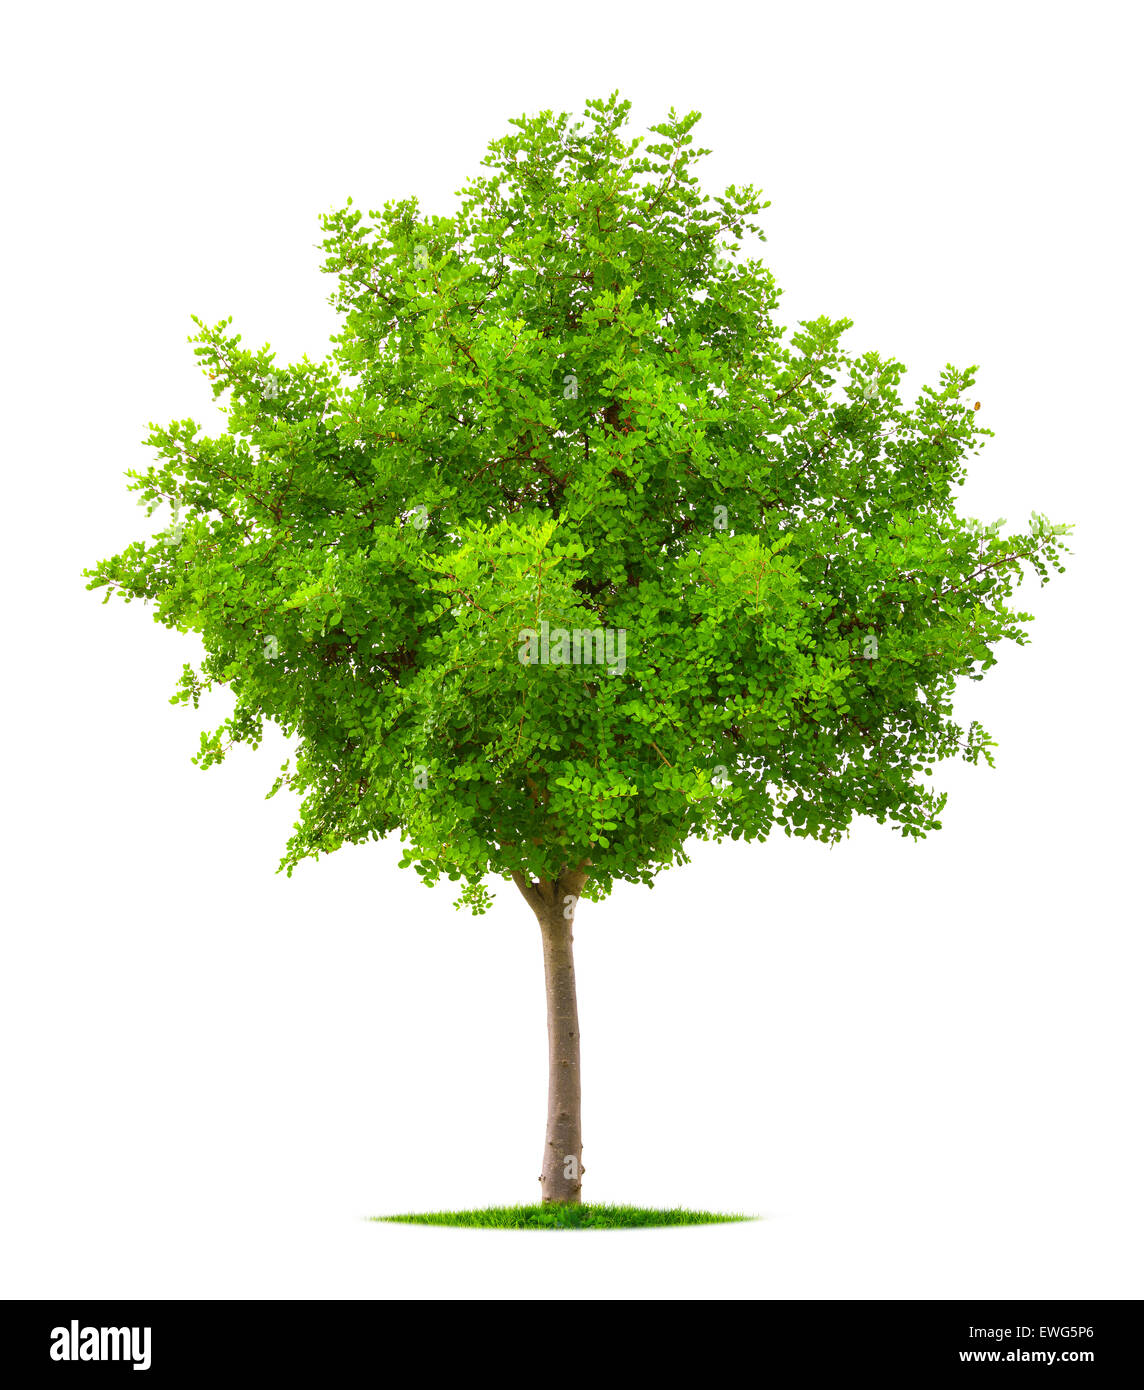 Bel arbre avec Lush Fresh feuillage vert vibrant isolé sur fond blanc, pur Banque D'Images